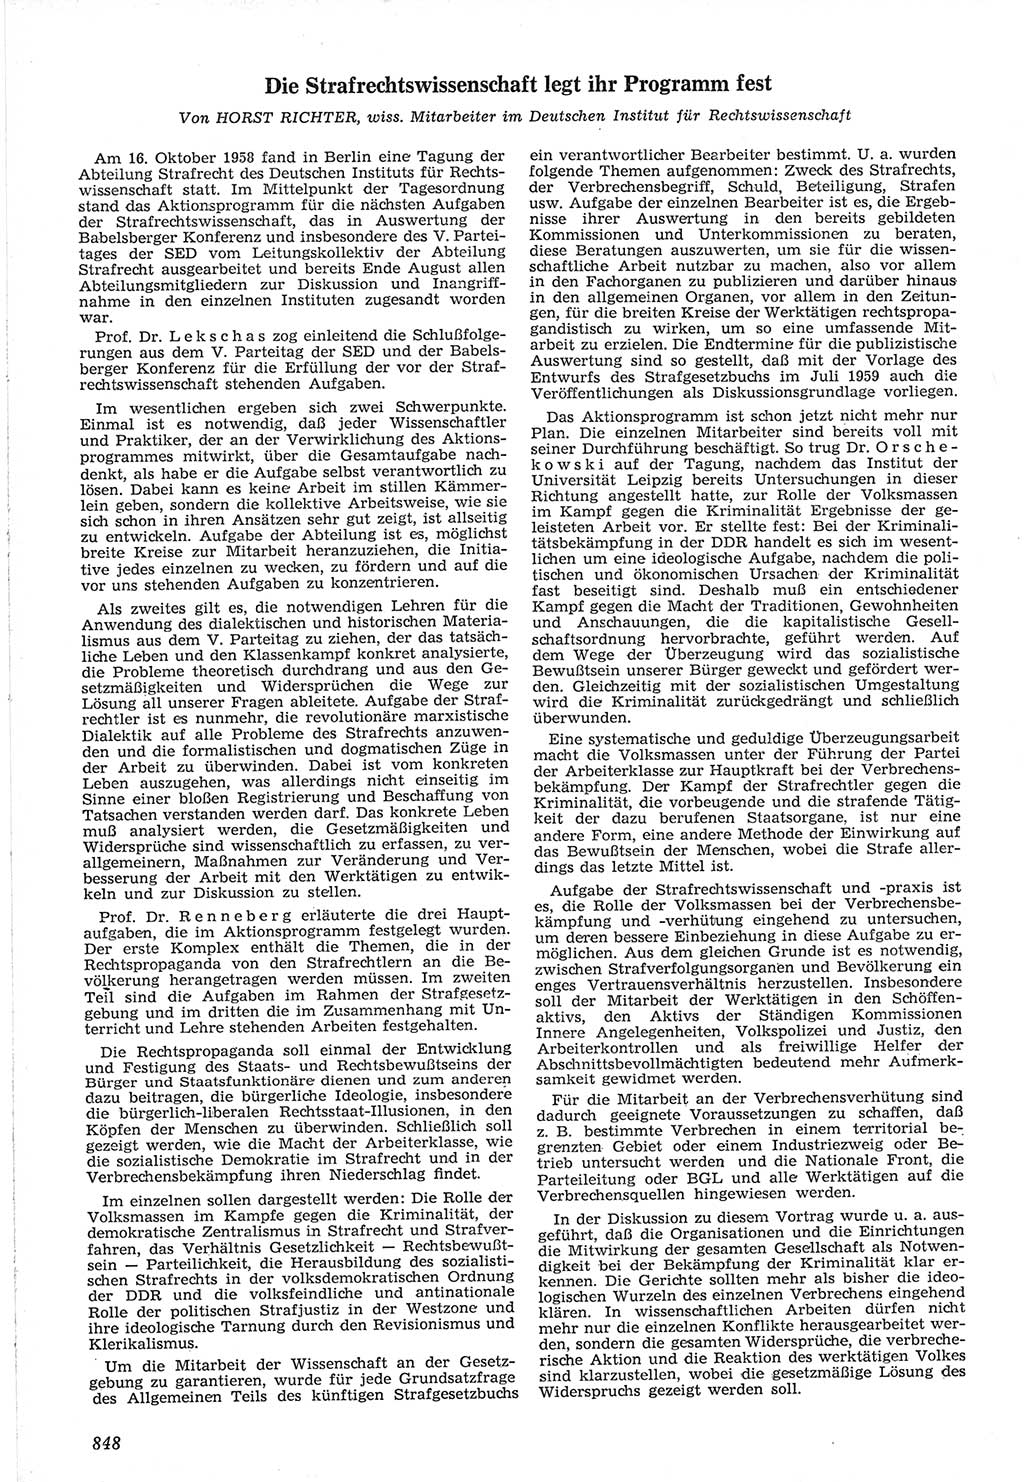 Neue Justiz (NJ), Zeitschrift für Recht und Rechtswissenschaft [Deutsche Demokratische Republik (DDR)], 12. Jahrgang 1958, Seite 848 (NJ DDR 1958, S. 848)